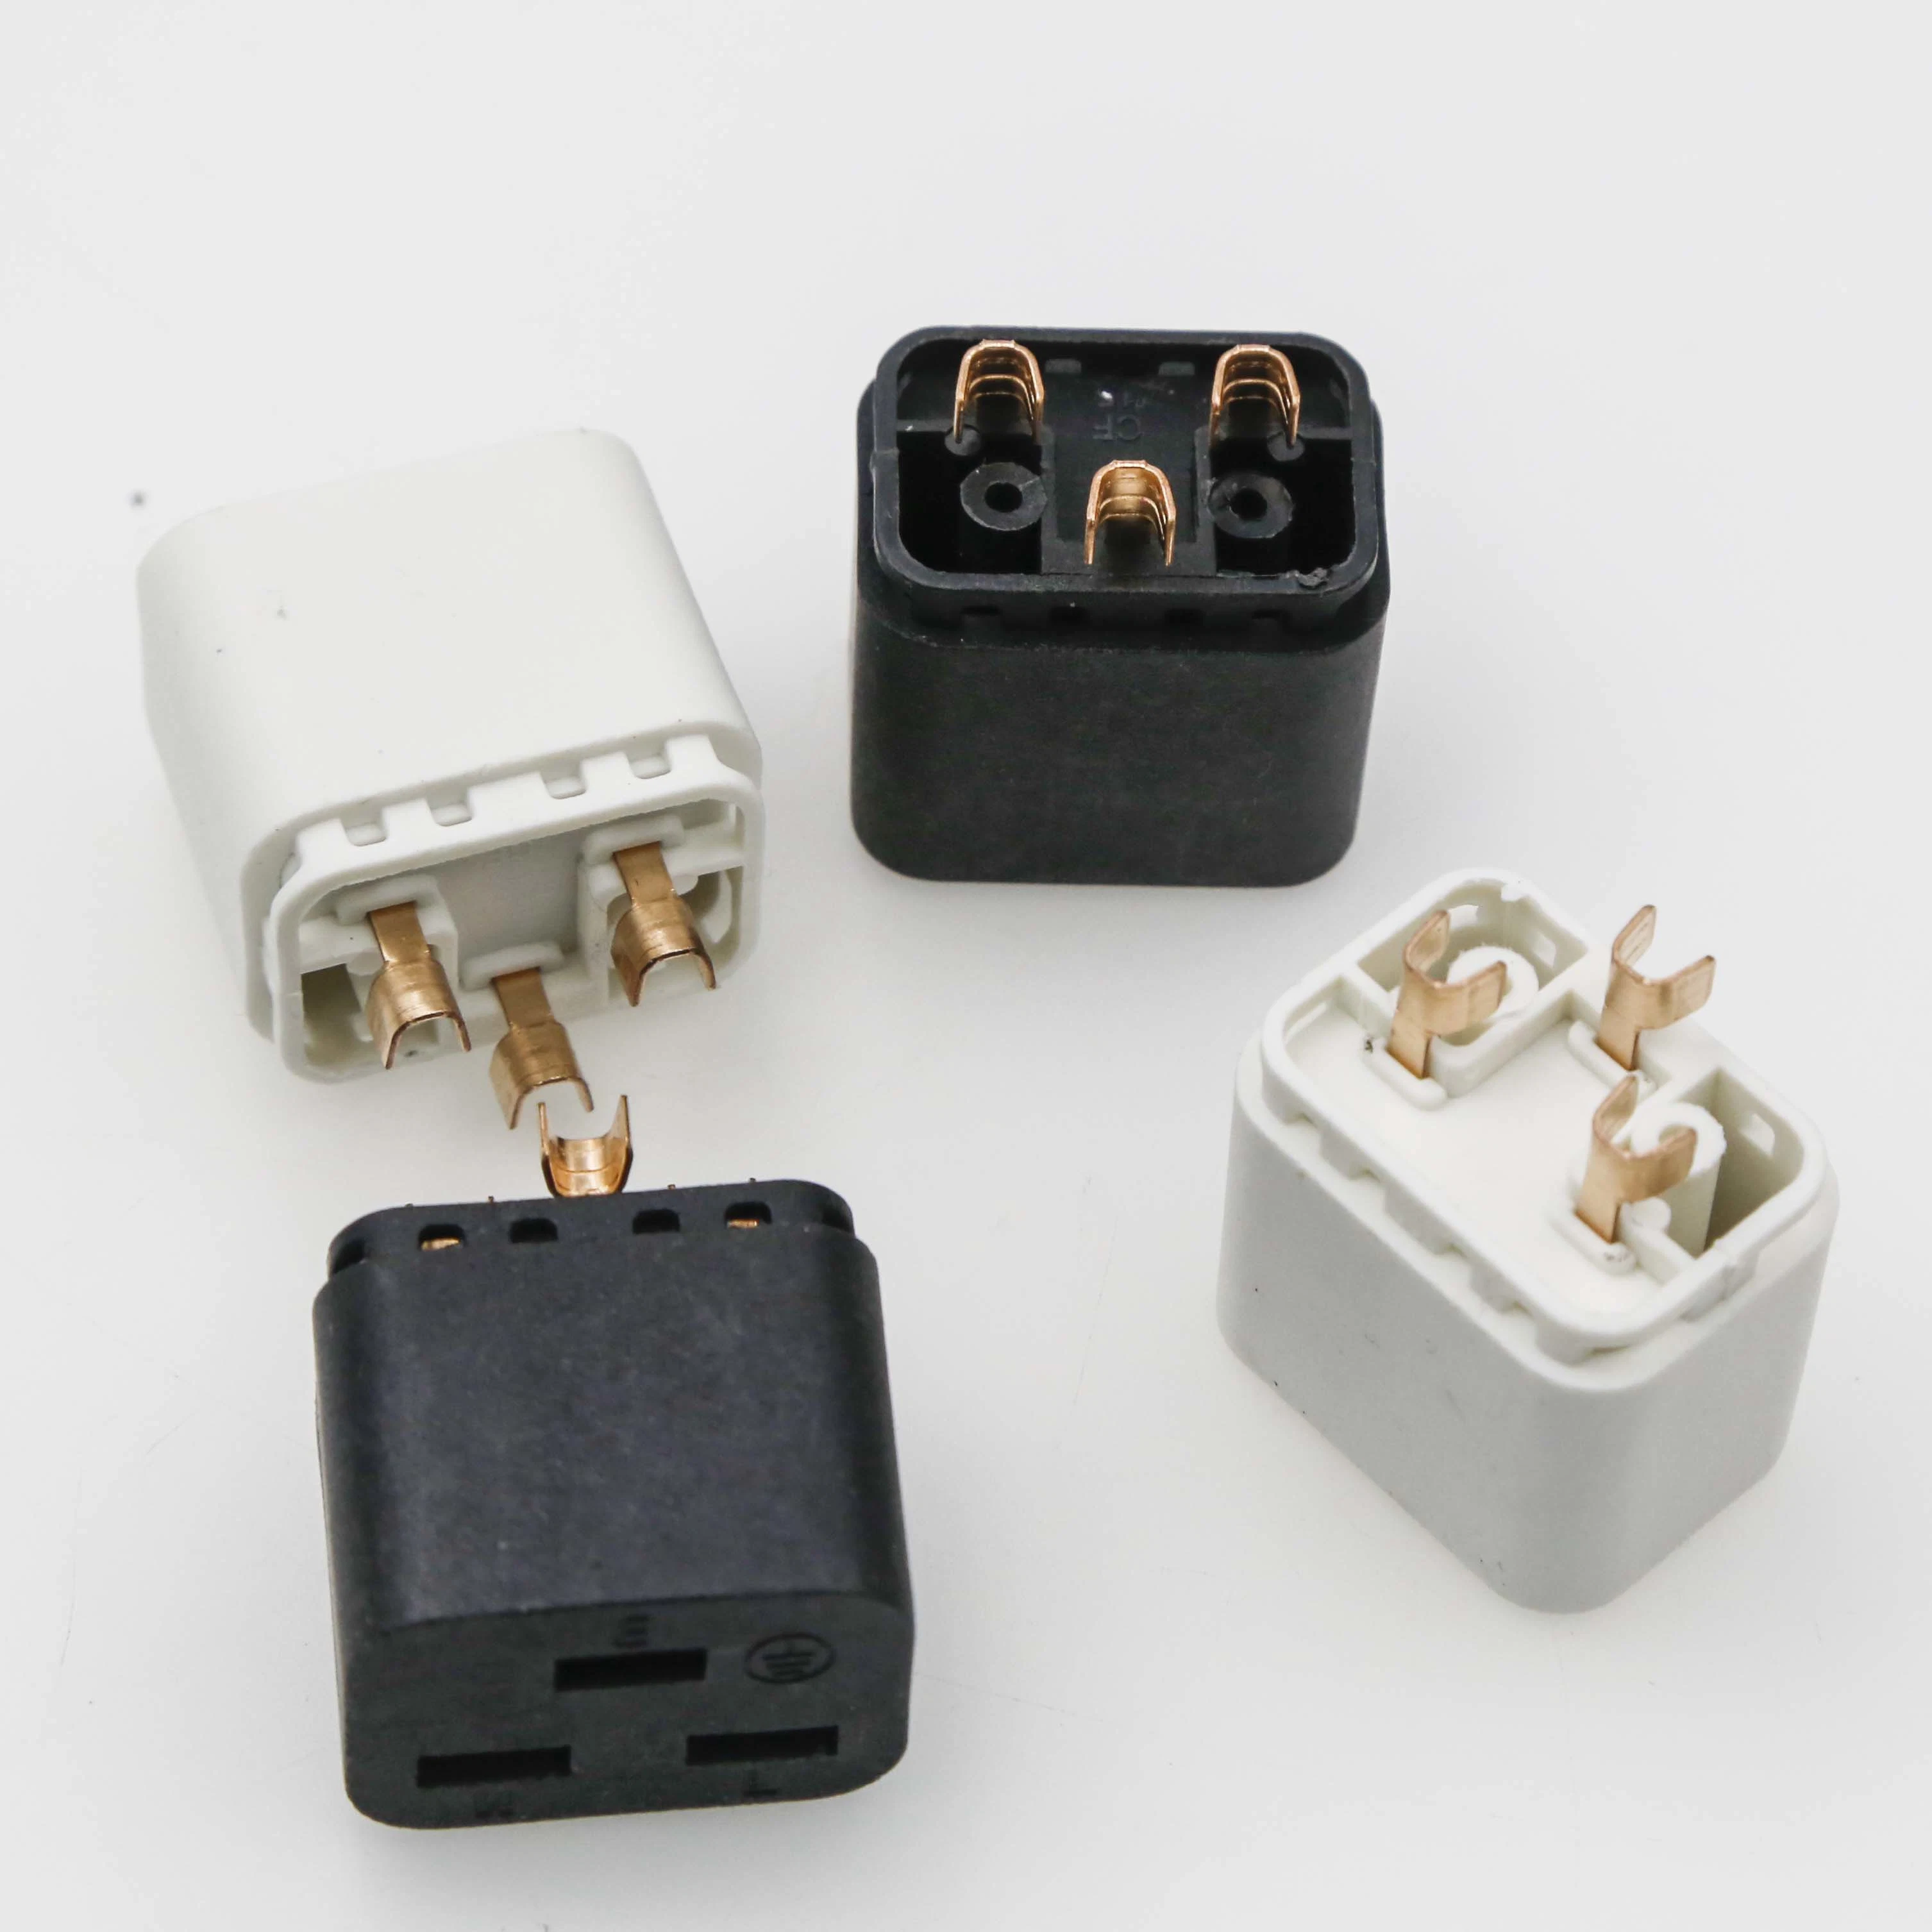 Encastres de conector hembra de cables de extensión estándar para Europa 2,5A